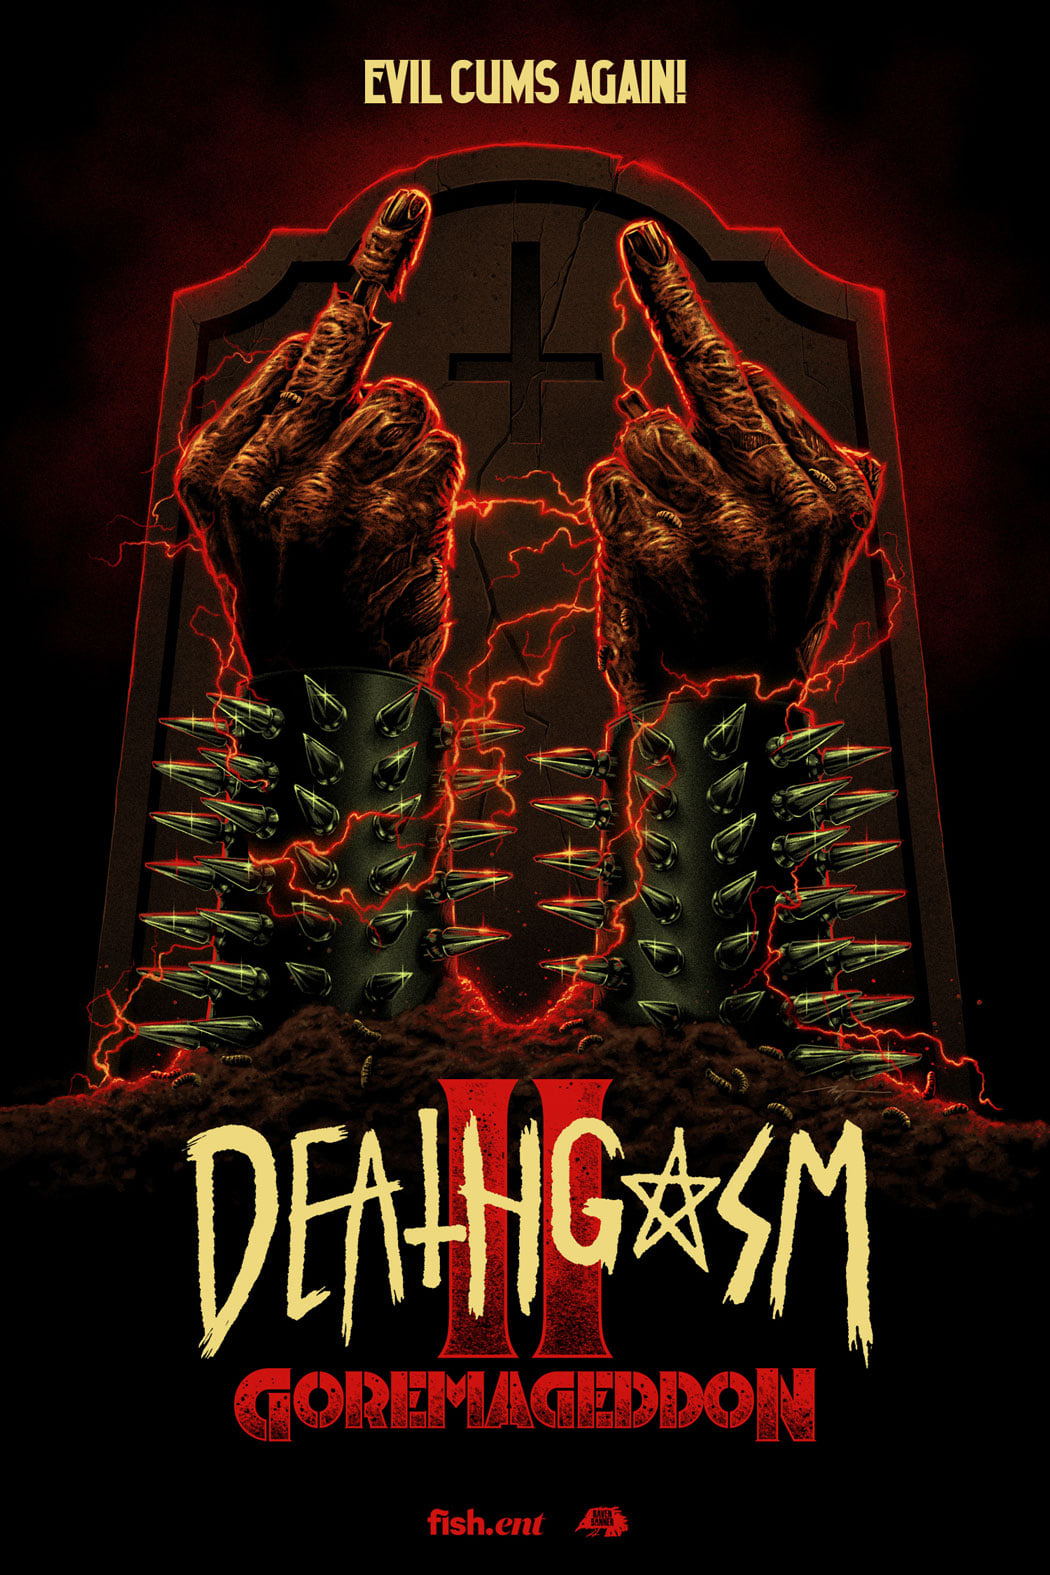 Deathgasm: GOREMAGEDDON